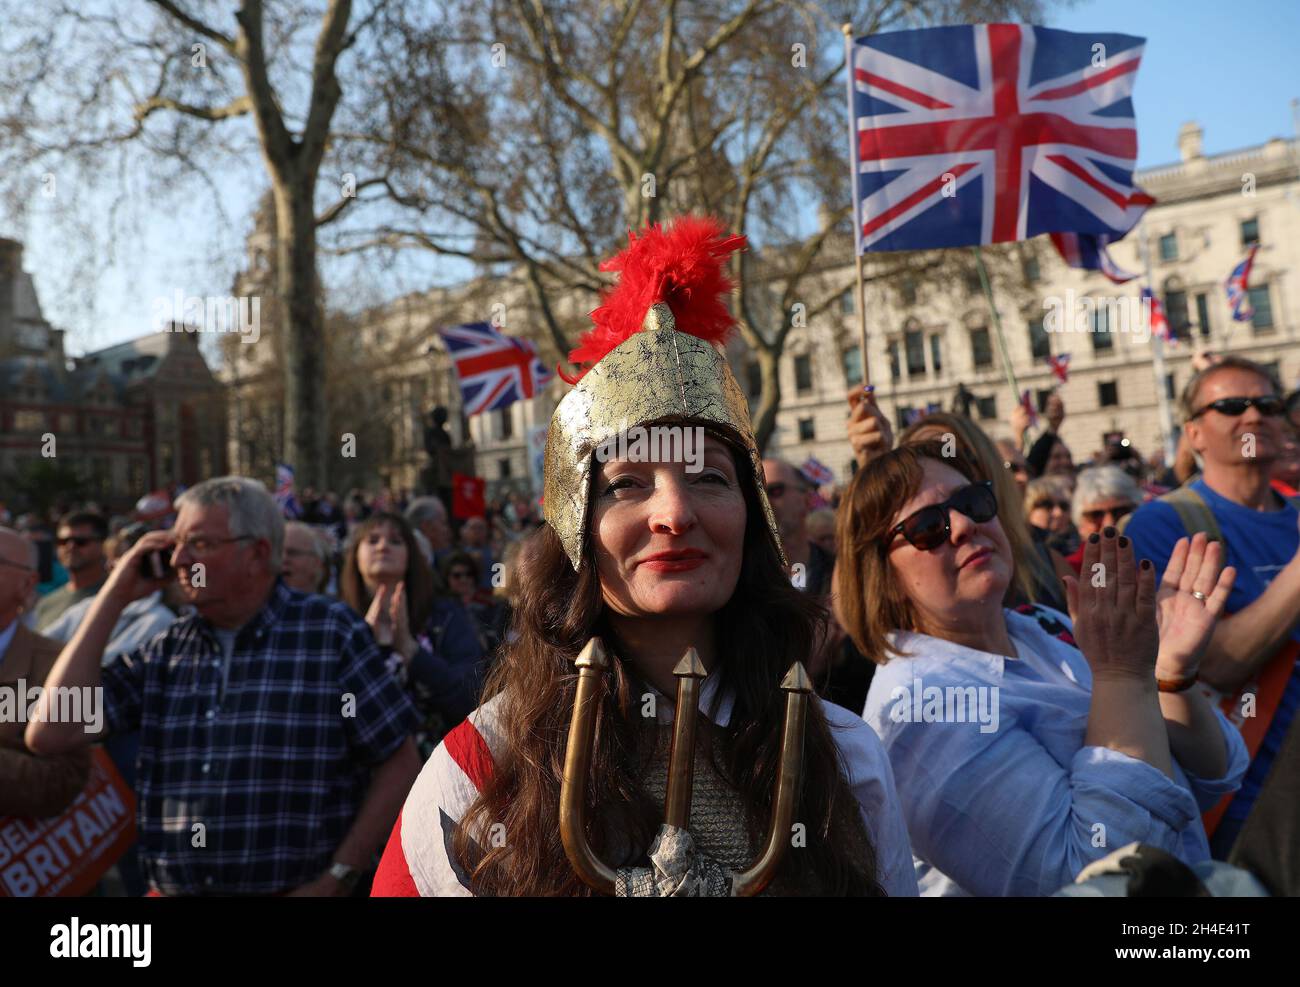 Lascia che i sostenitori della campagna elettorale si rallegrino della folla alla marcia per lasciare la protesta in Parliament Square, Westminster, Londra Foto Stock